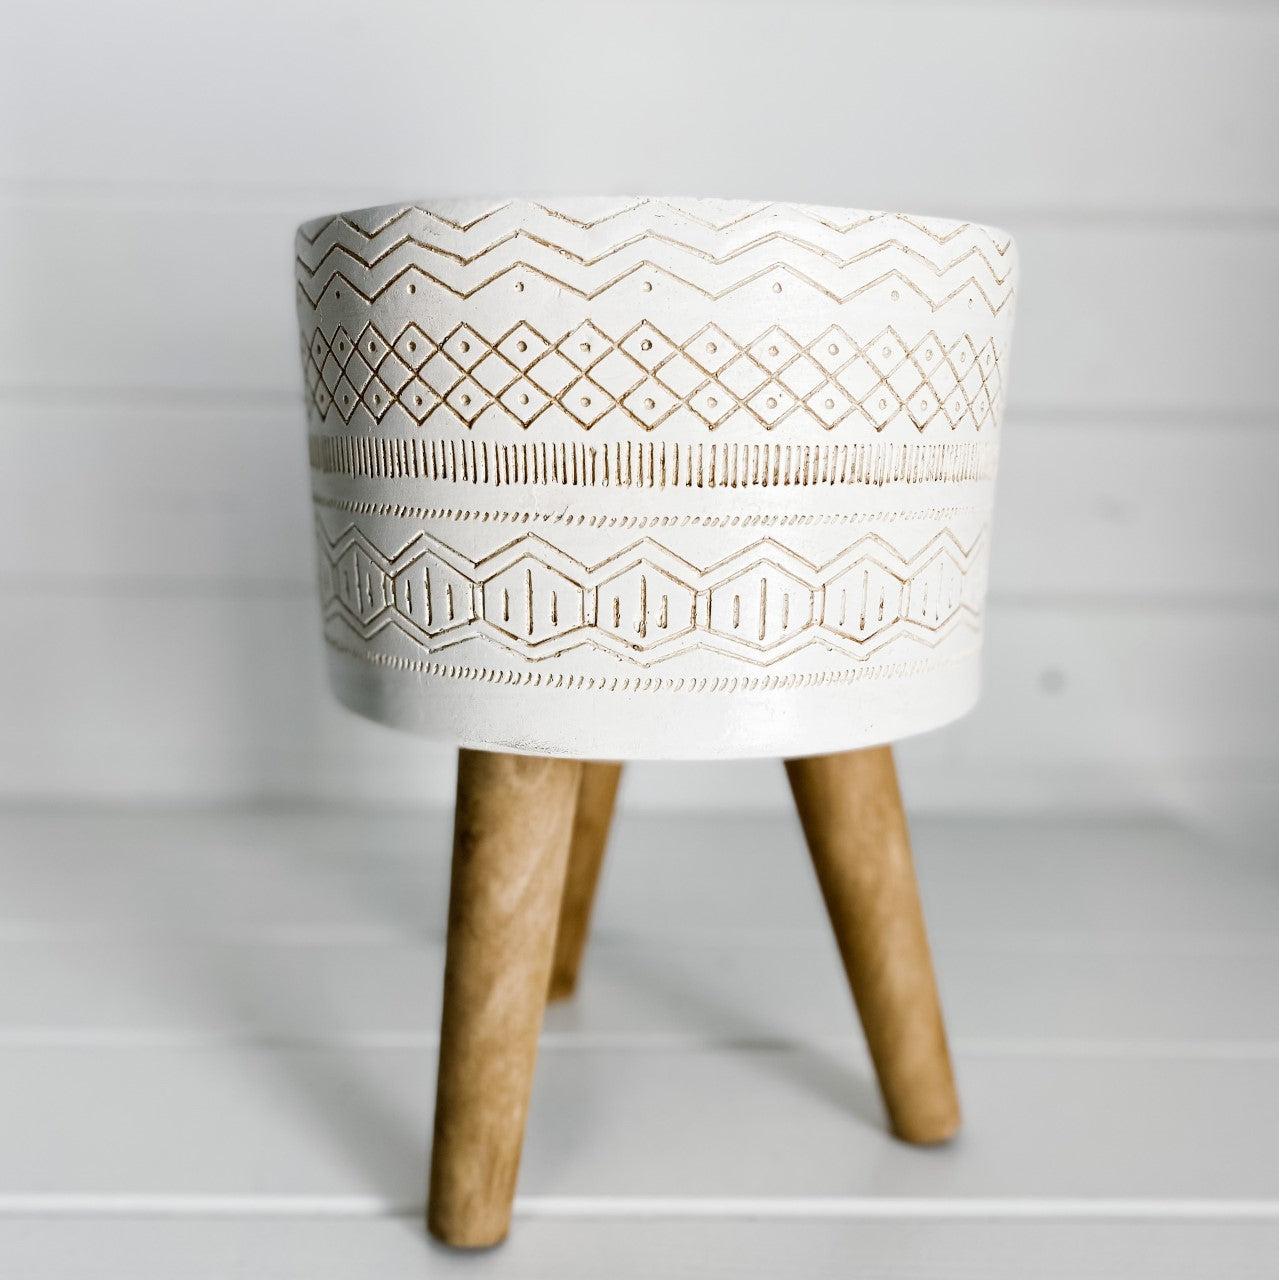 White/Terracotta Designed Pot on Wood legs